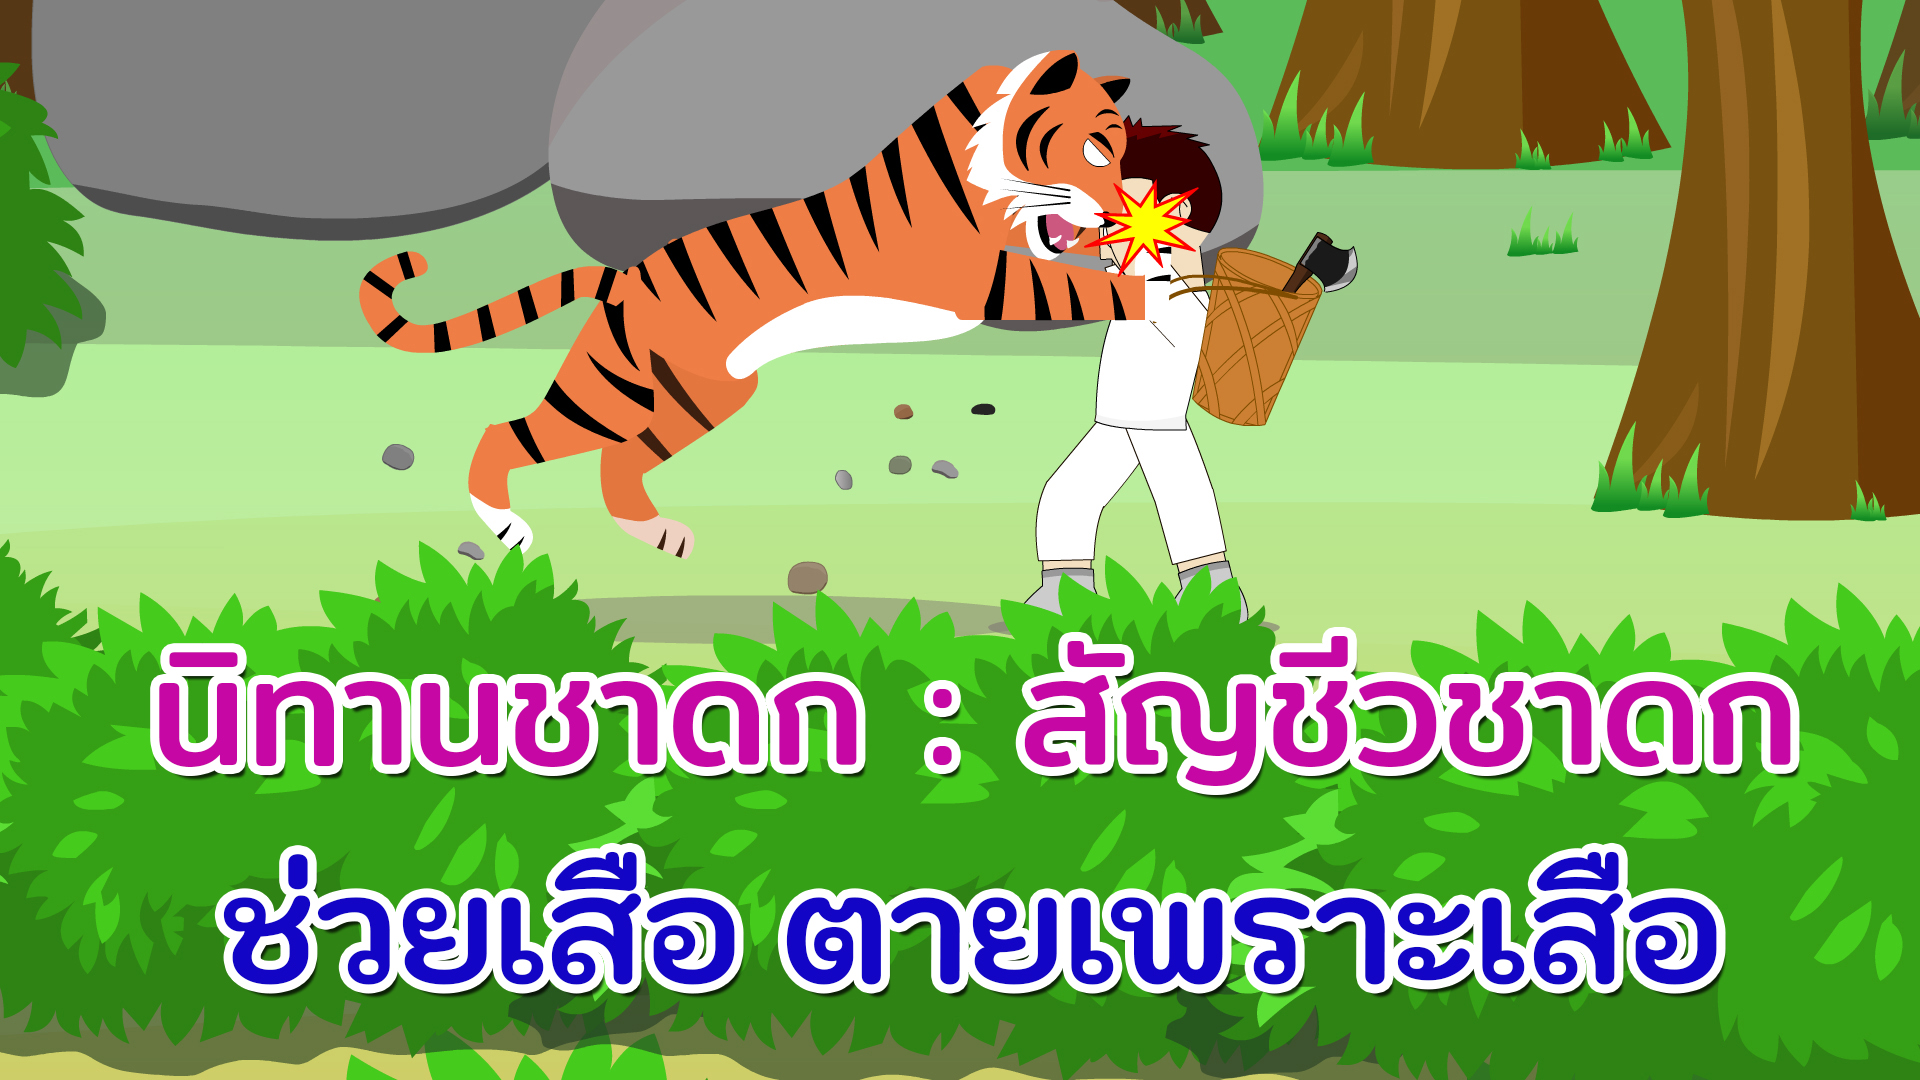 สัญชีวชาดก : ช่วยเสือ ตายเพราะเสือ